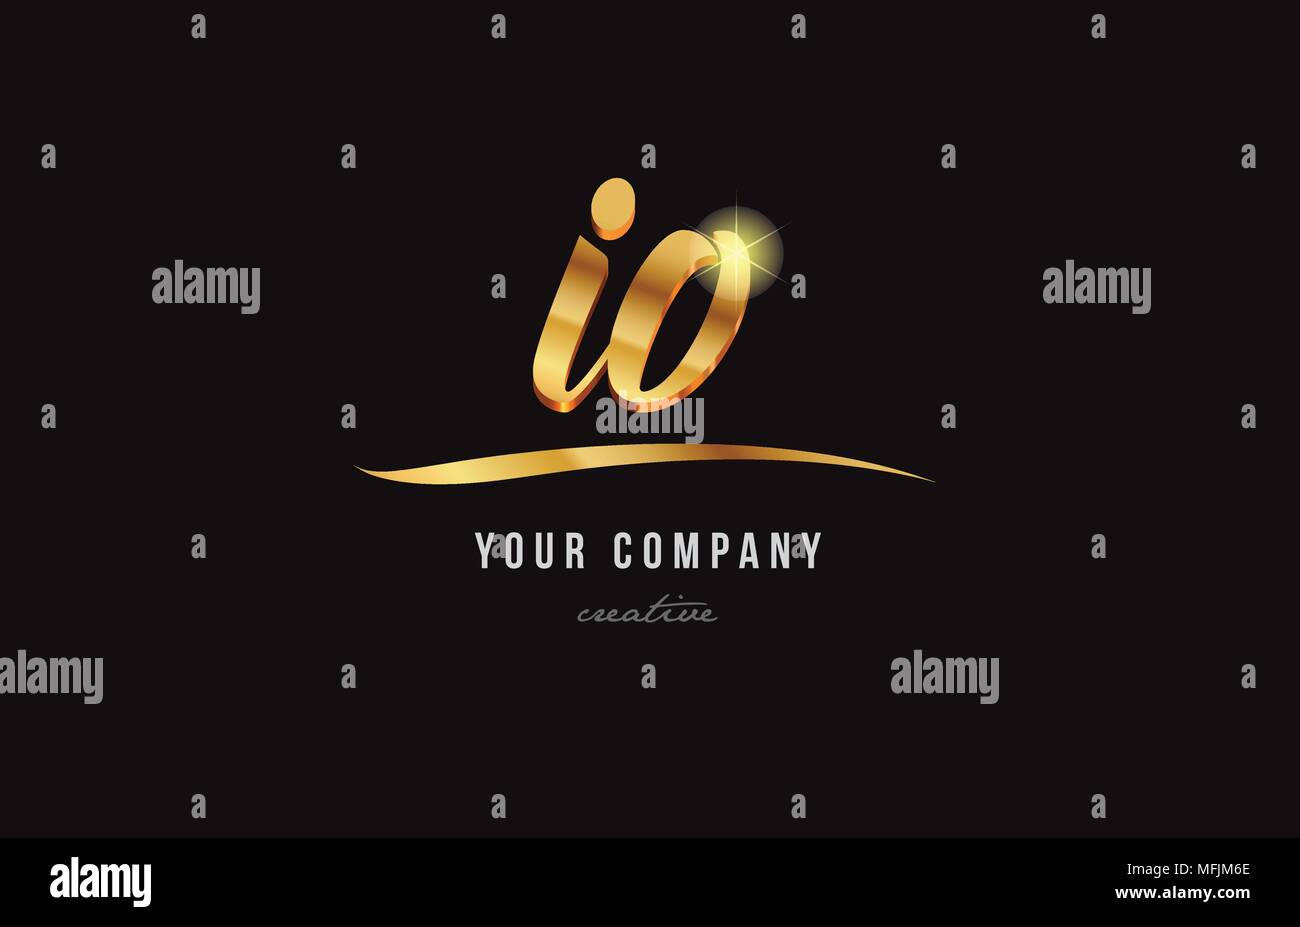 Lettre alphabet or io i o combinaison logo design adapté pour une société  ou entreprise Image Vectorielle Stock - Alamy